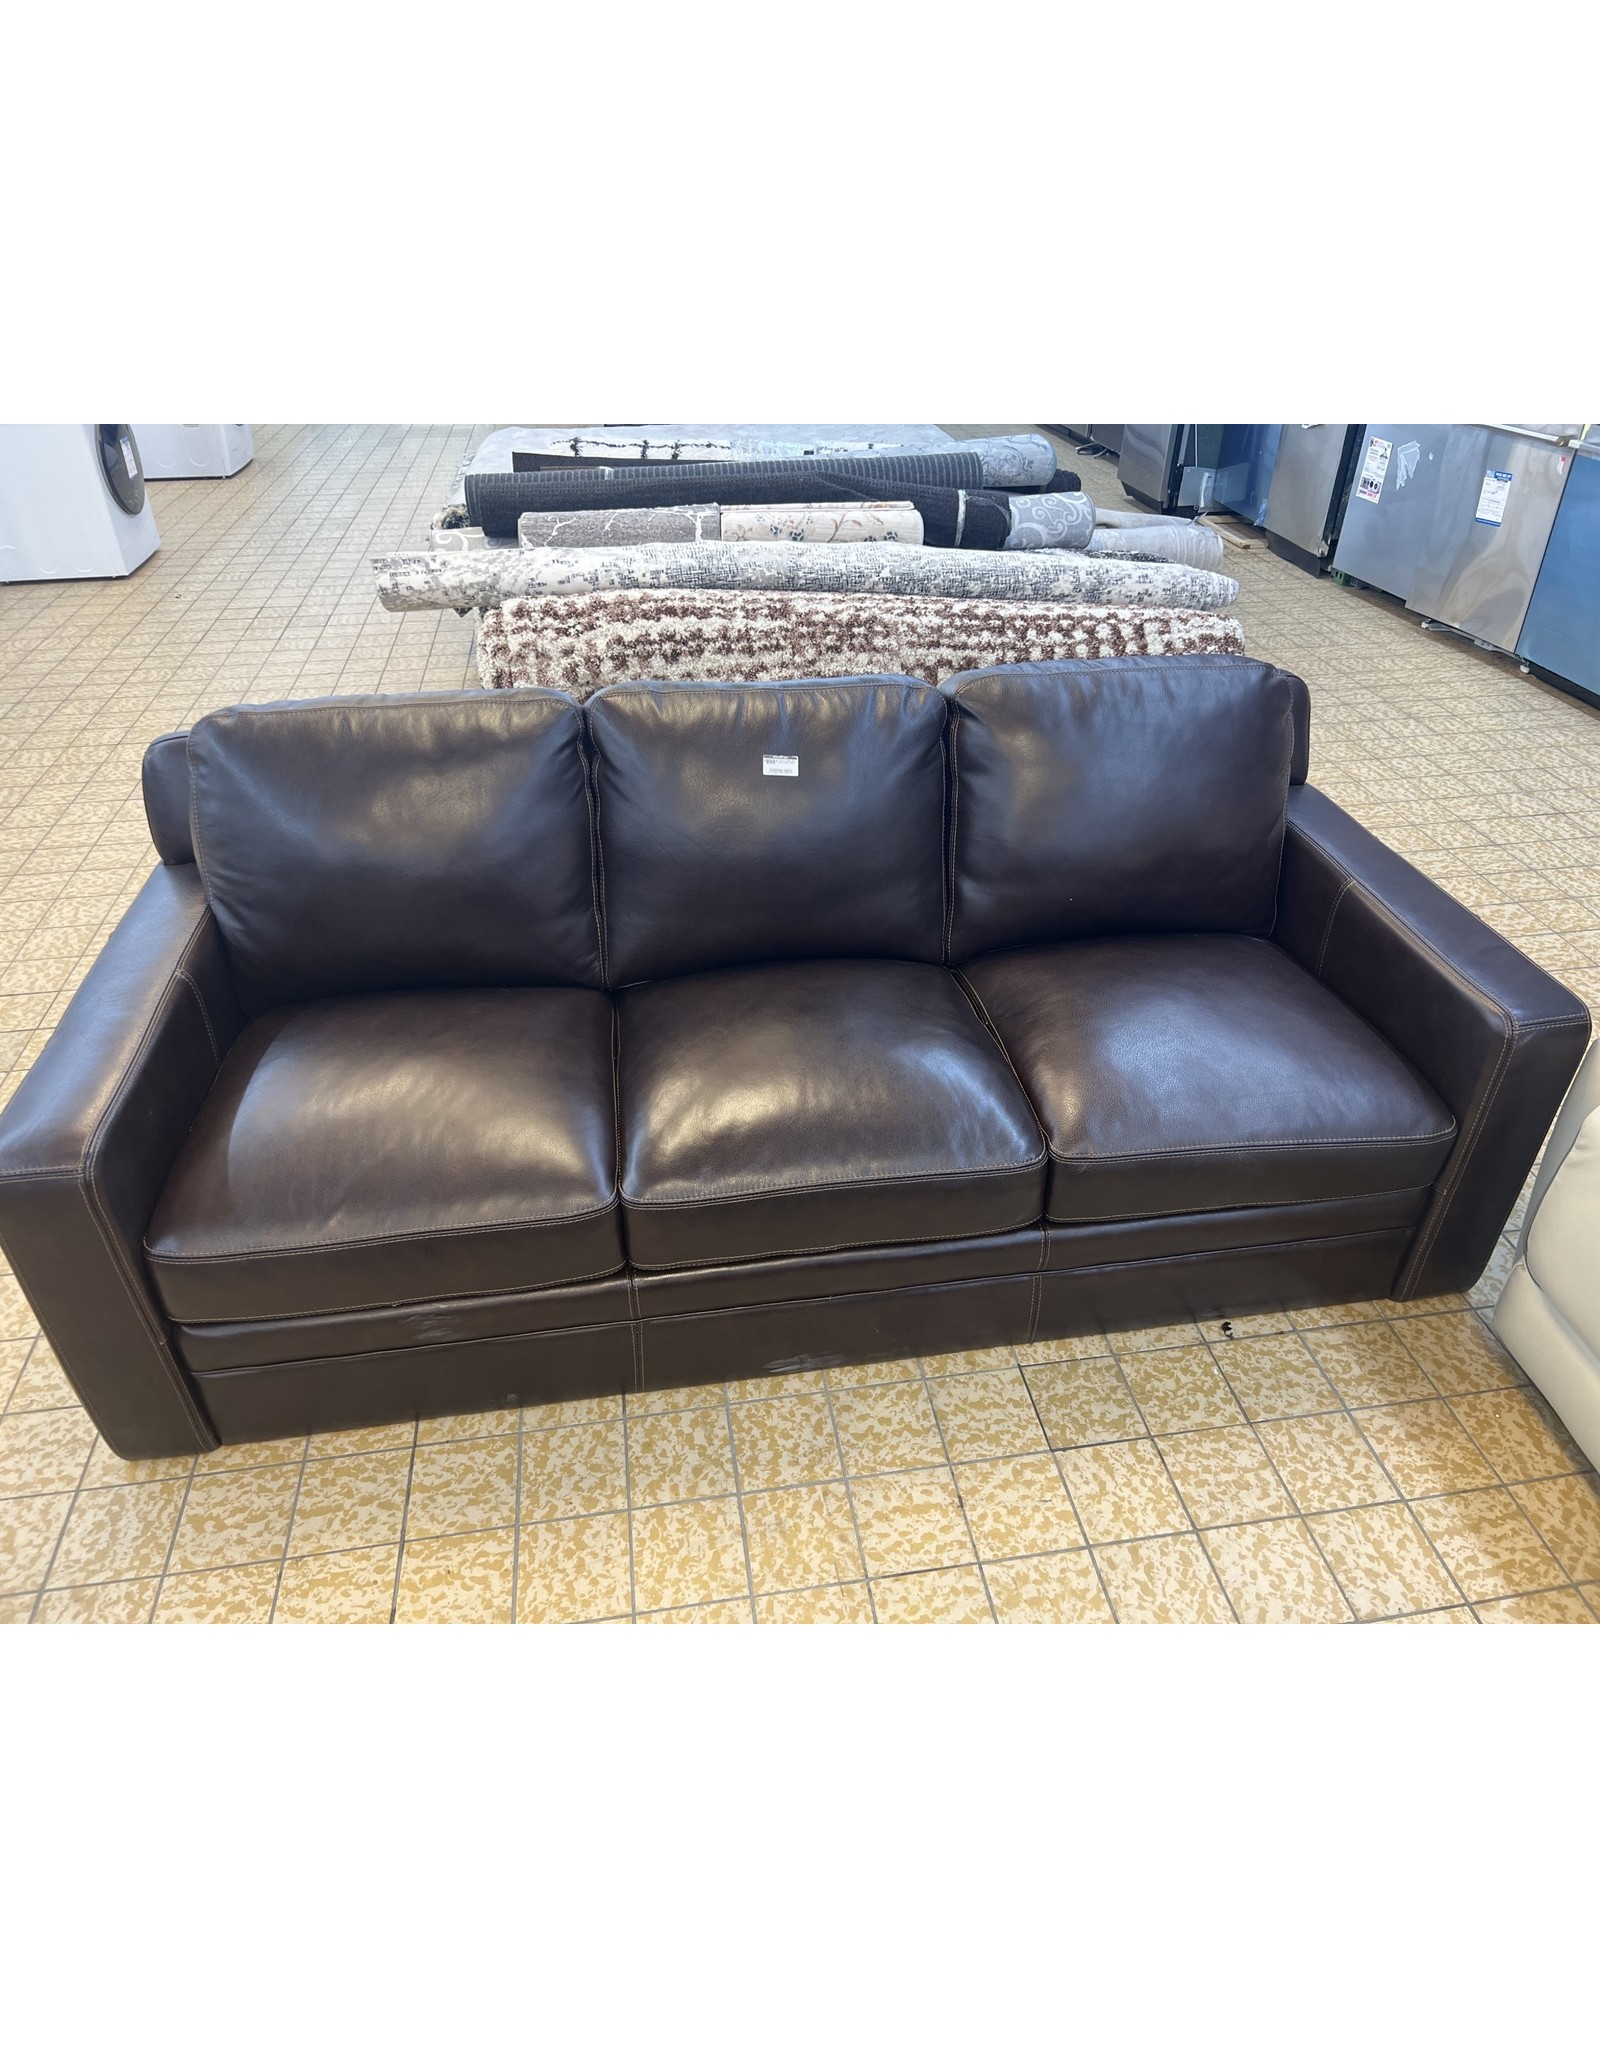 Simon Li Chanton Leather Sofa brown color 3 seats